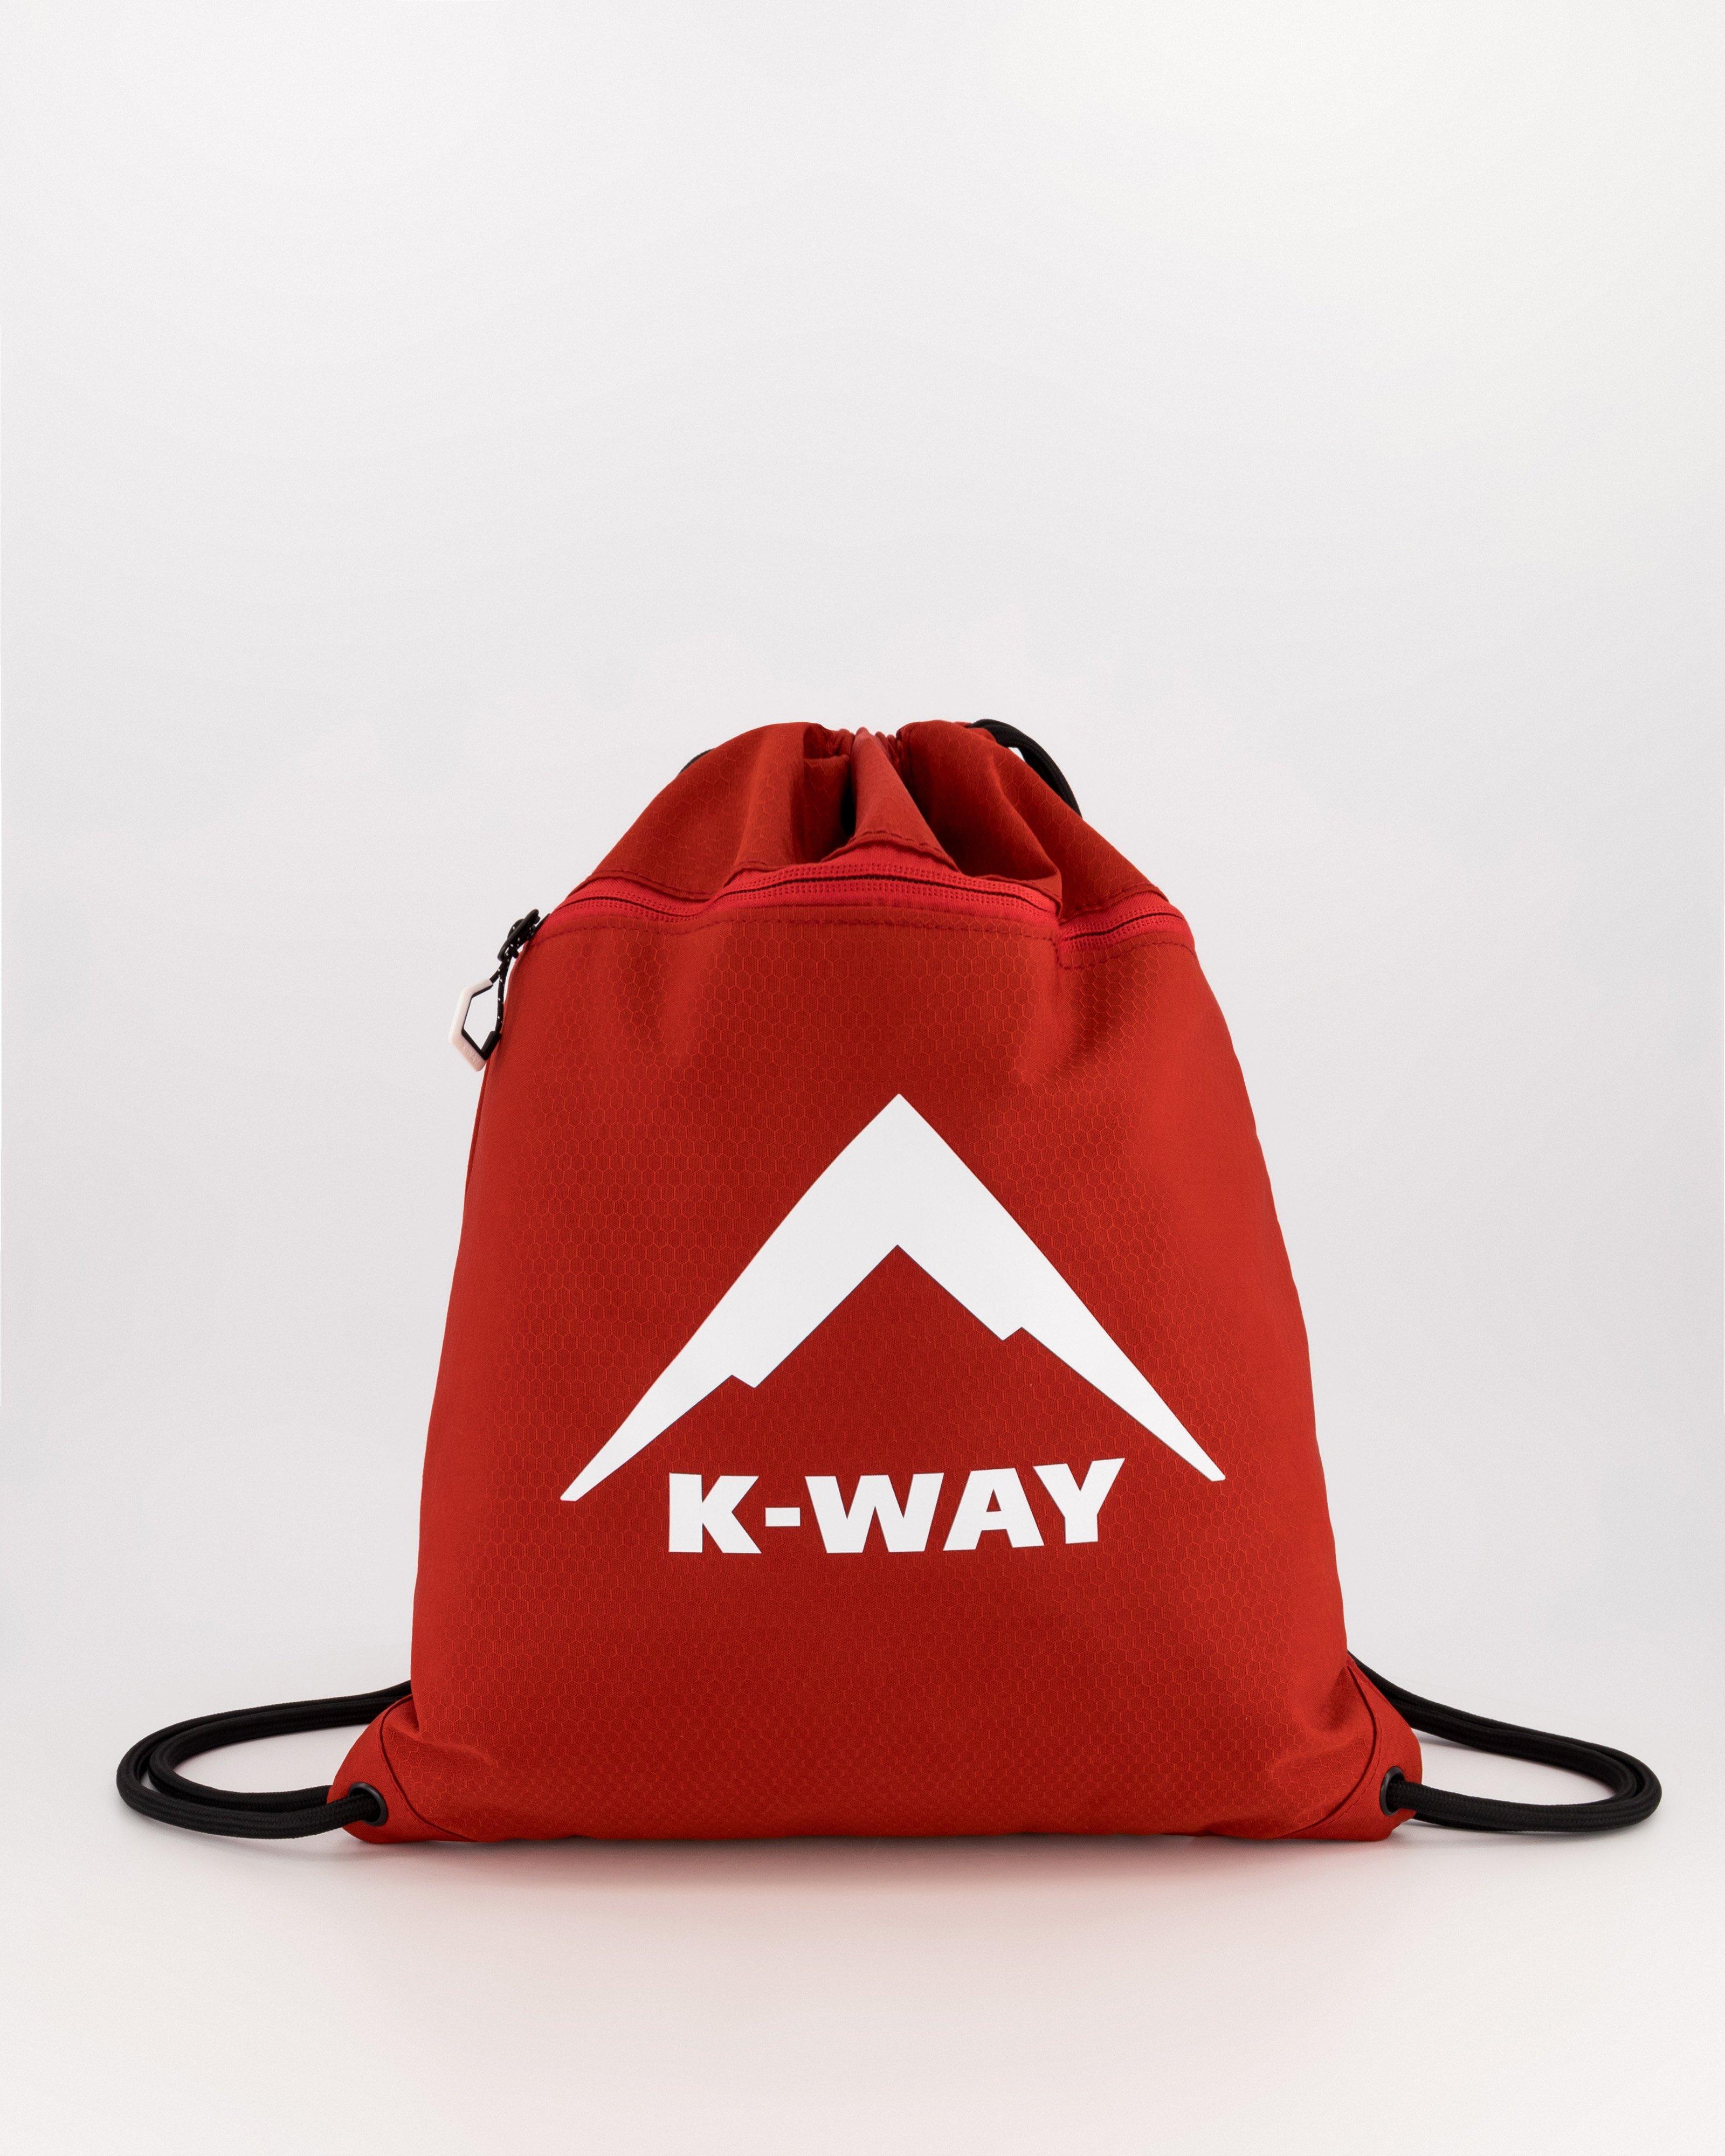 K-Way String Bag -  Red